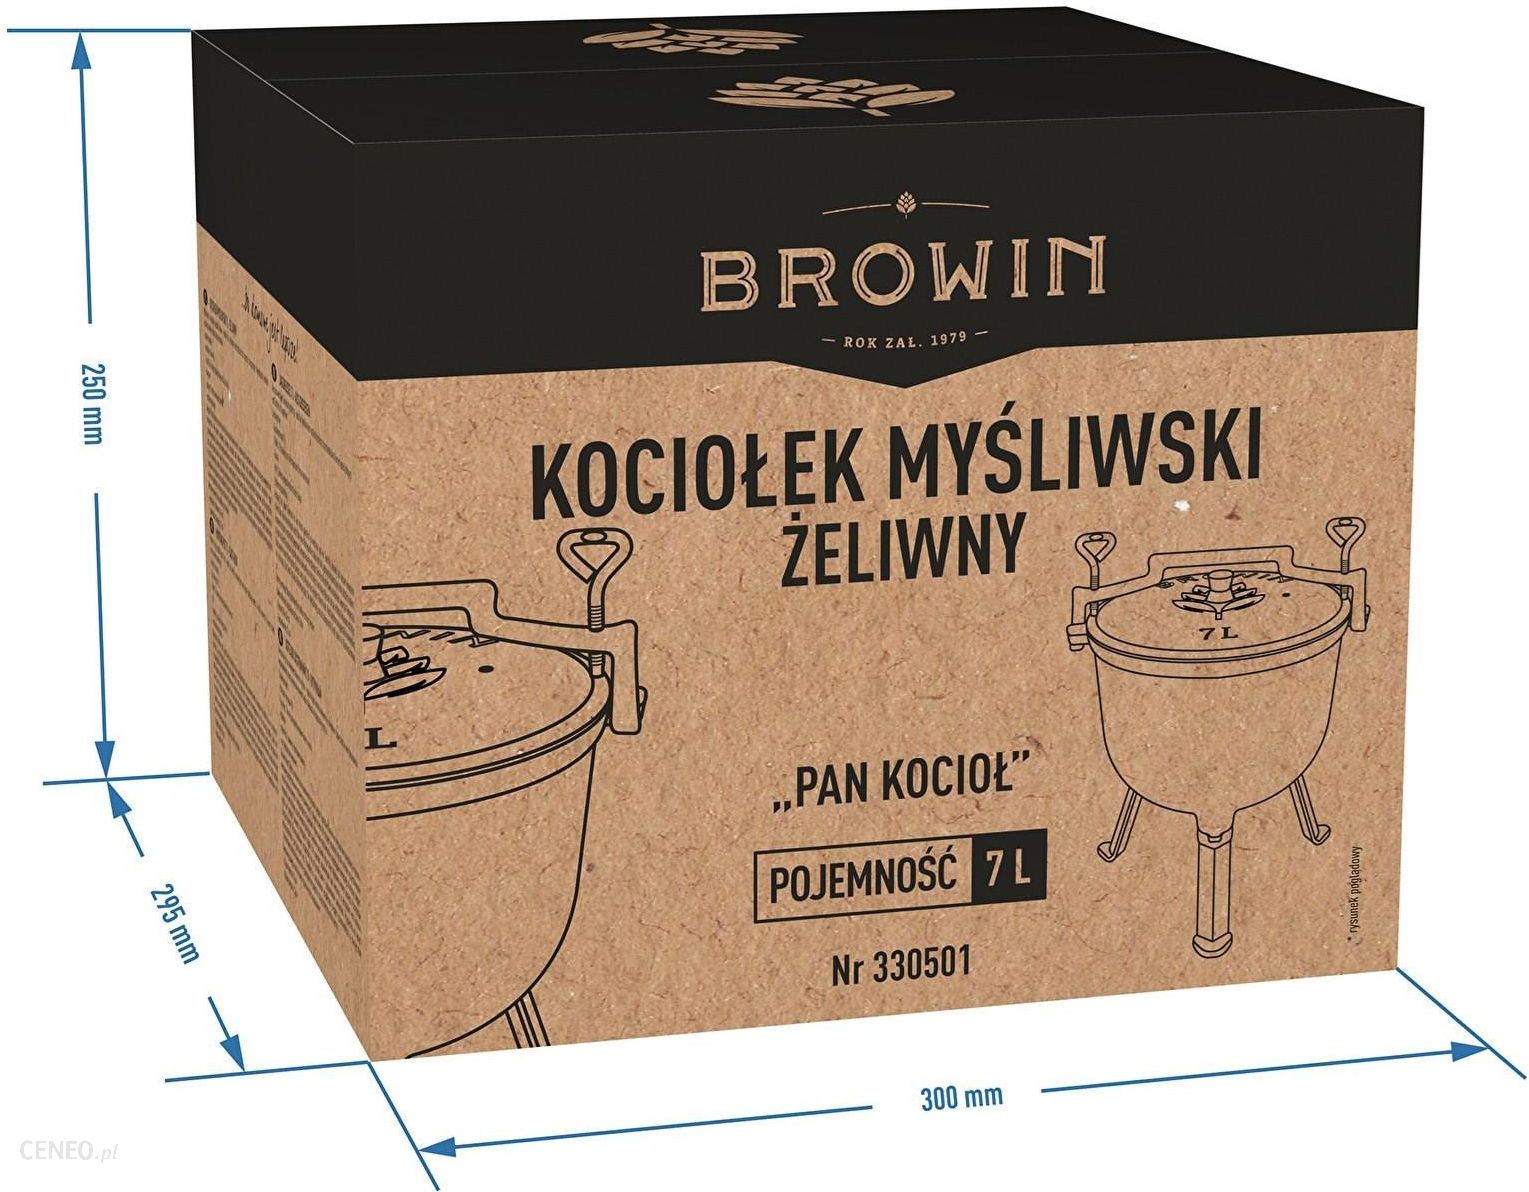 BROWIN Kociołek myśliwski 7l żeliwny PAN KOCIOŁ (330501)